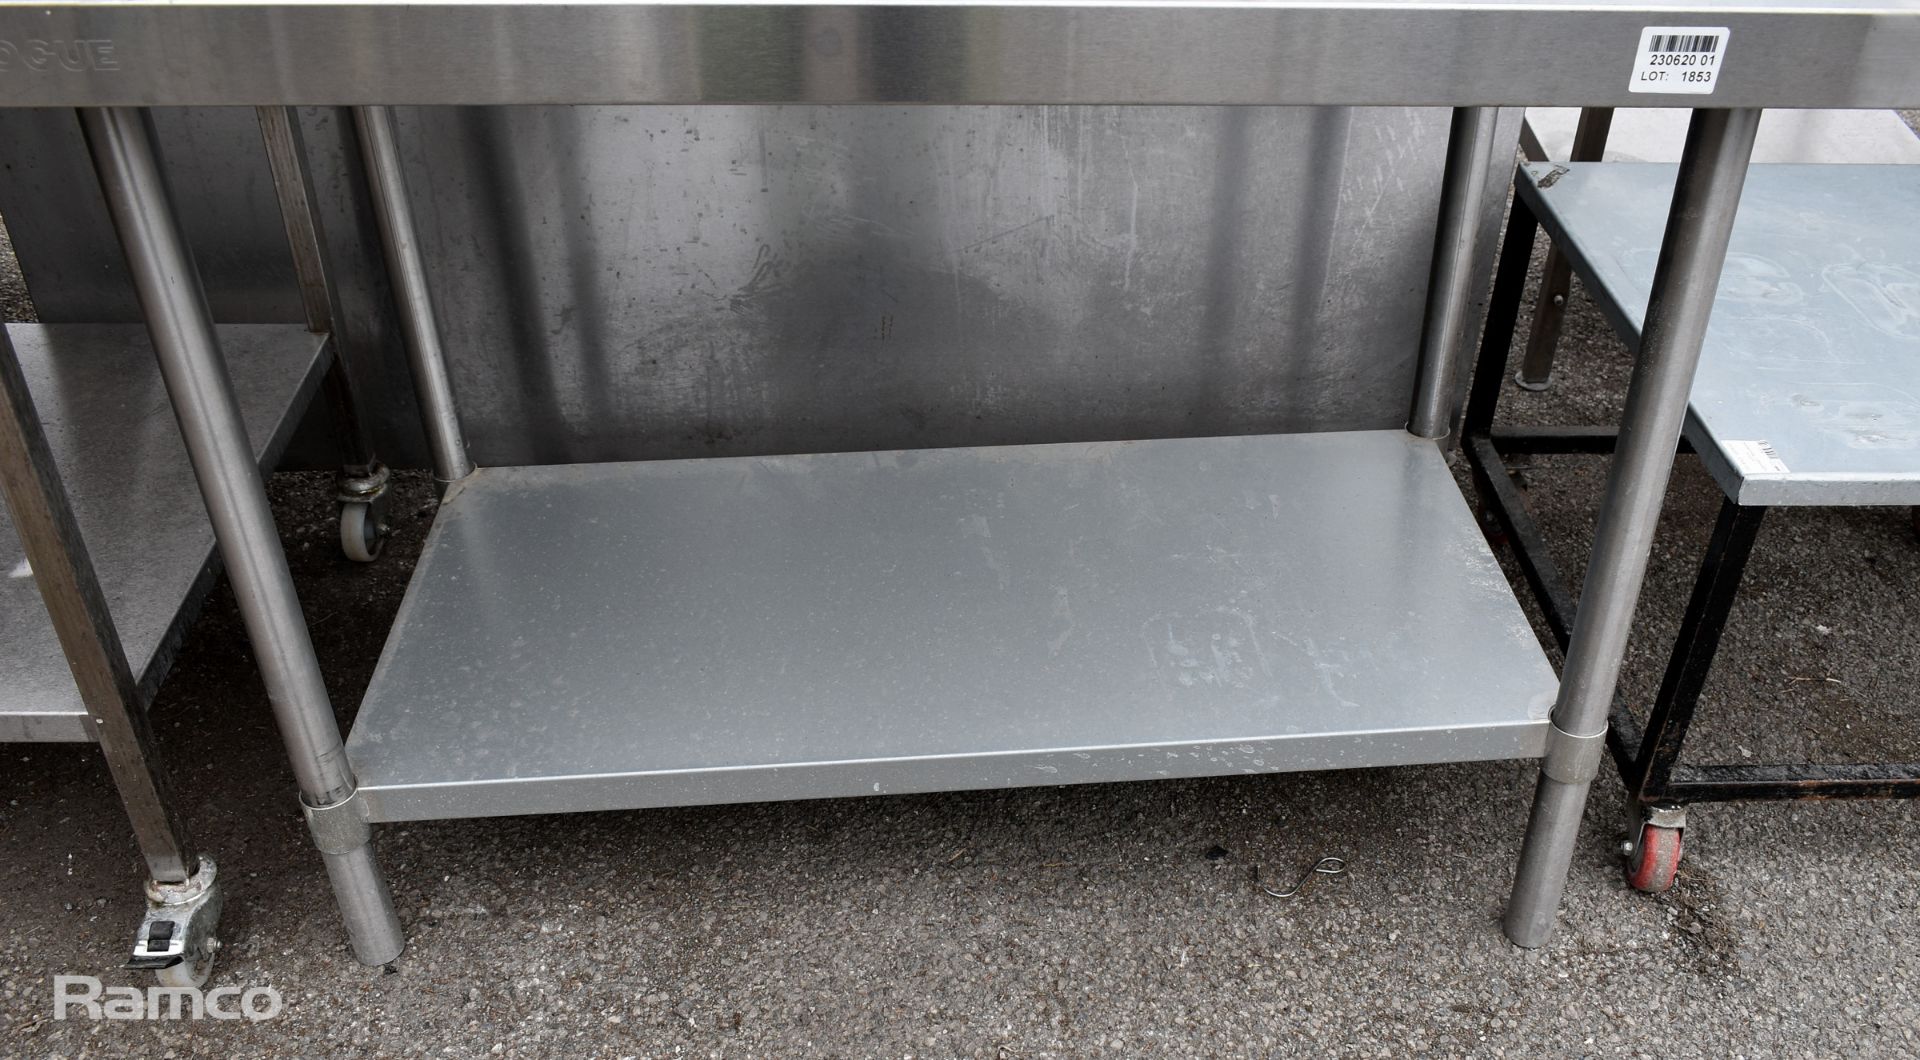 Stainless steel kitchen counter with splashback - L 1200 x W 700 x H 900mm - Bild 3 aus 3